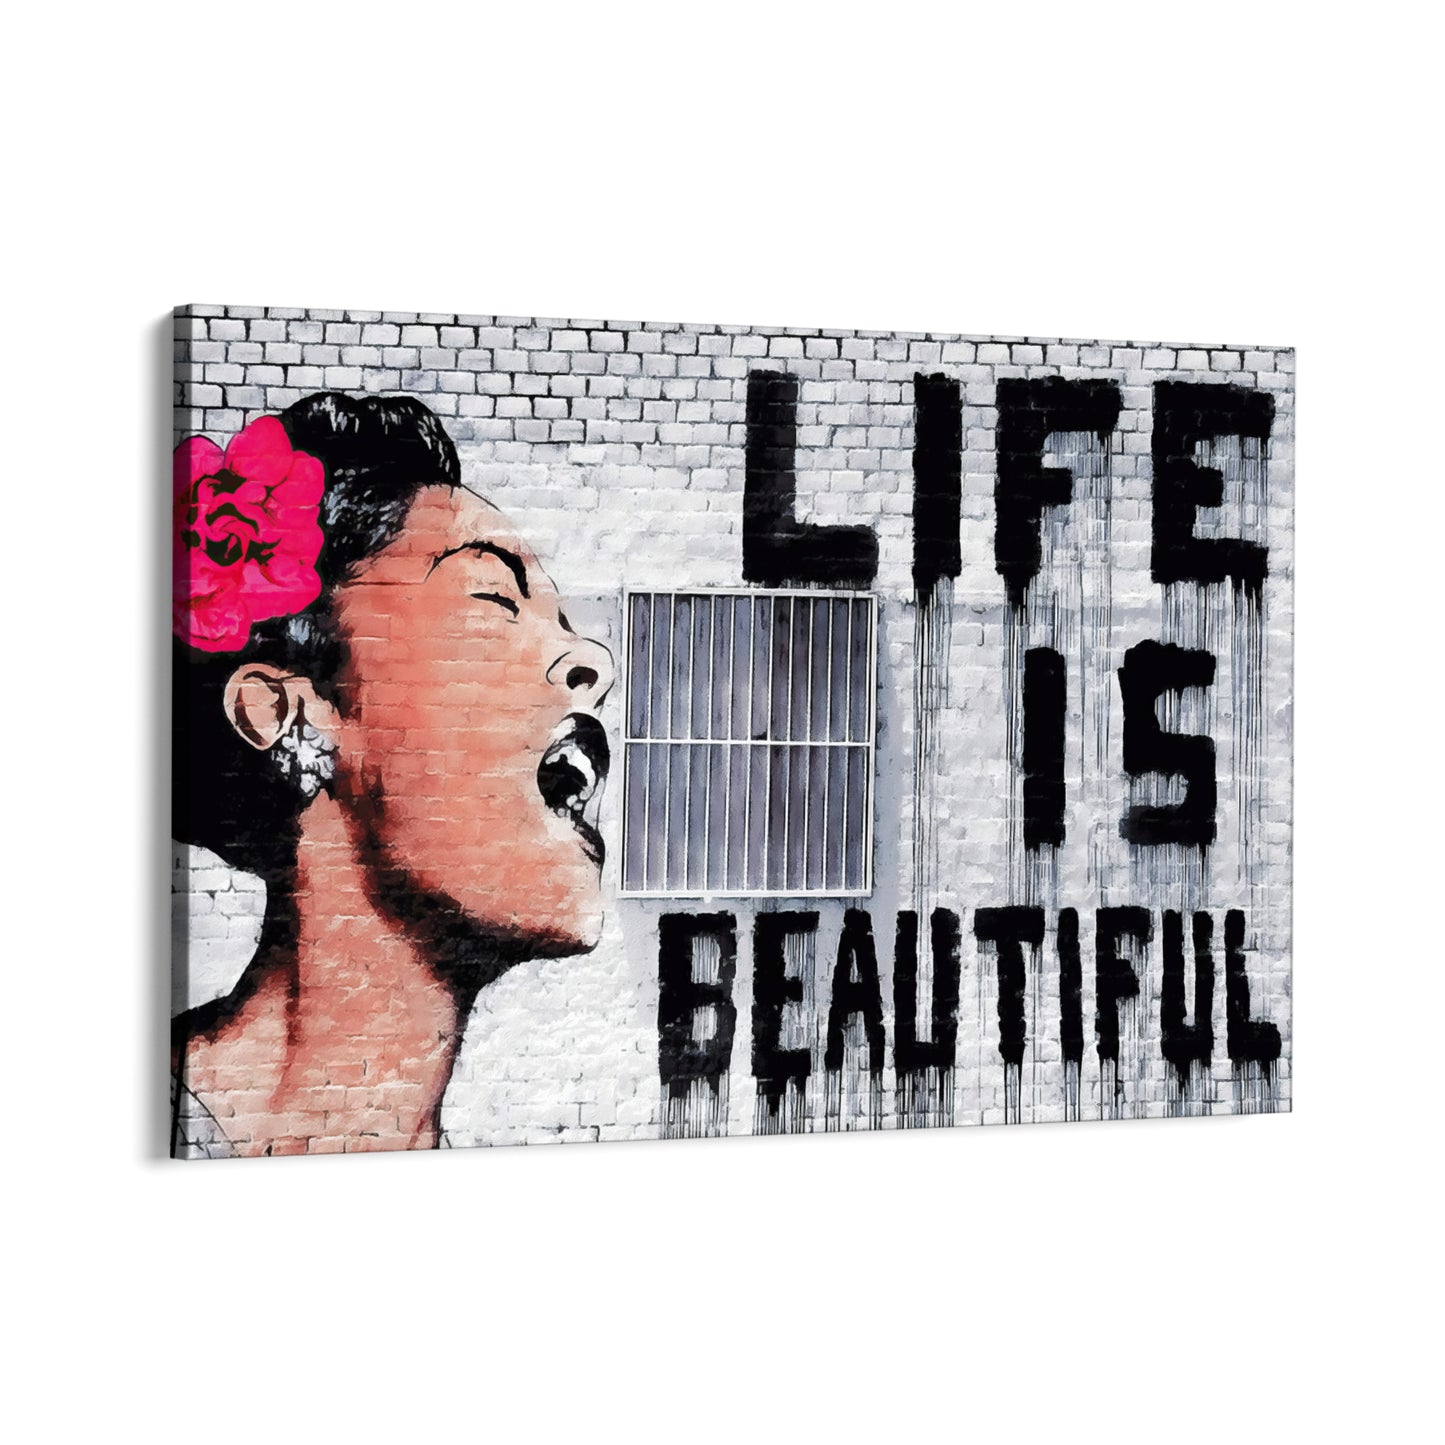 La vida es bella, Banksy.